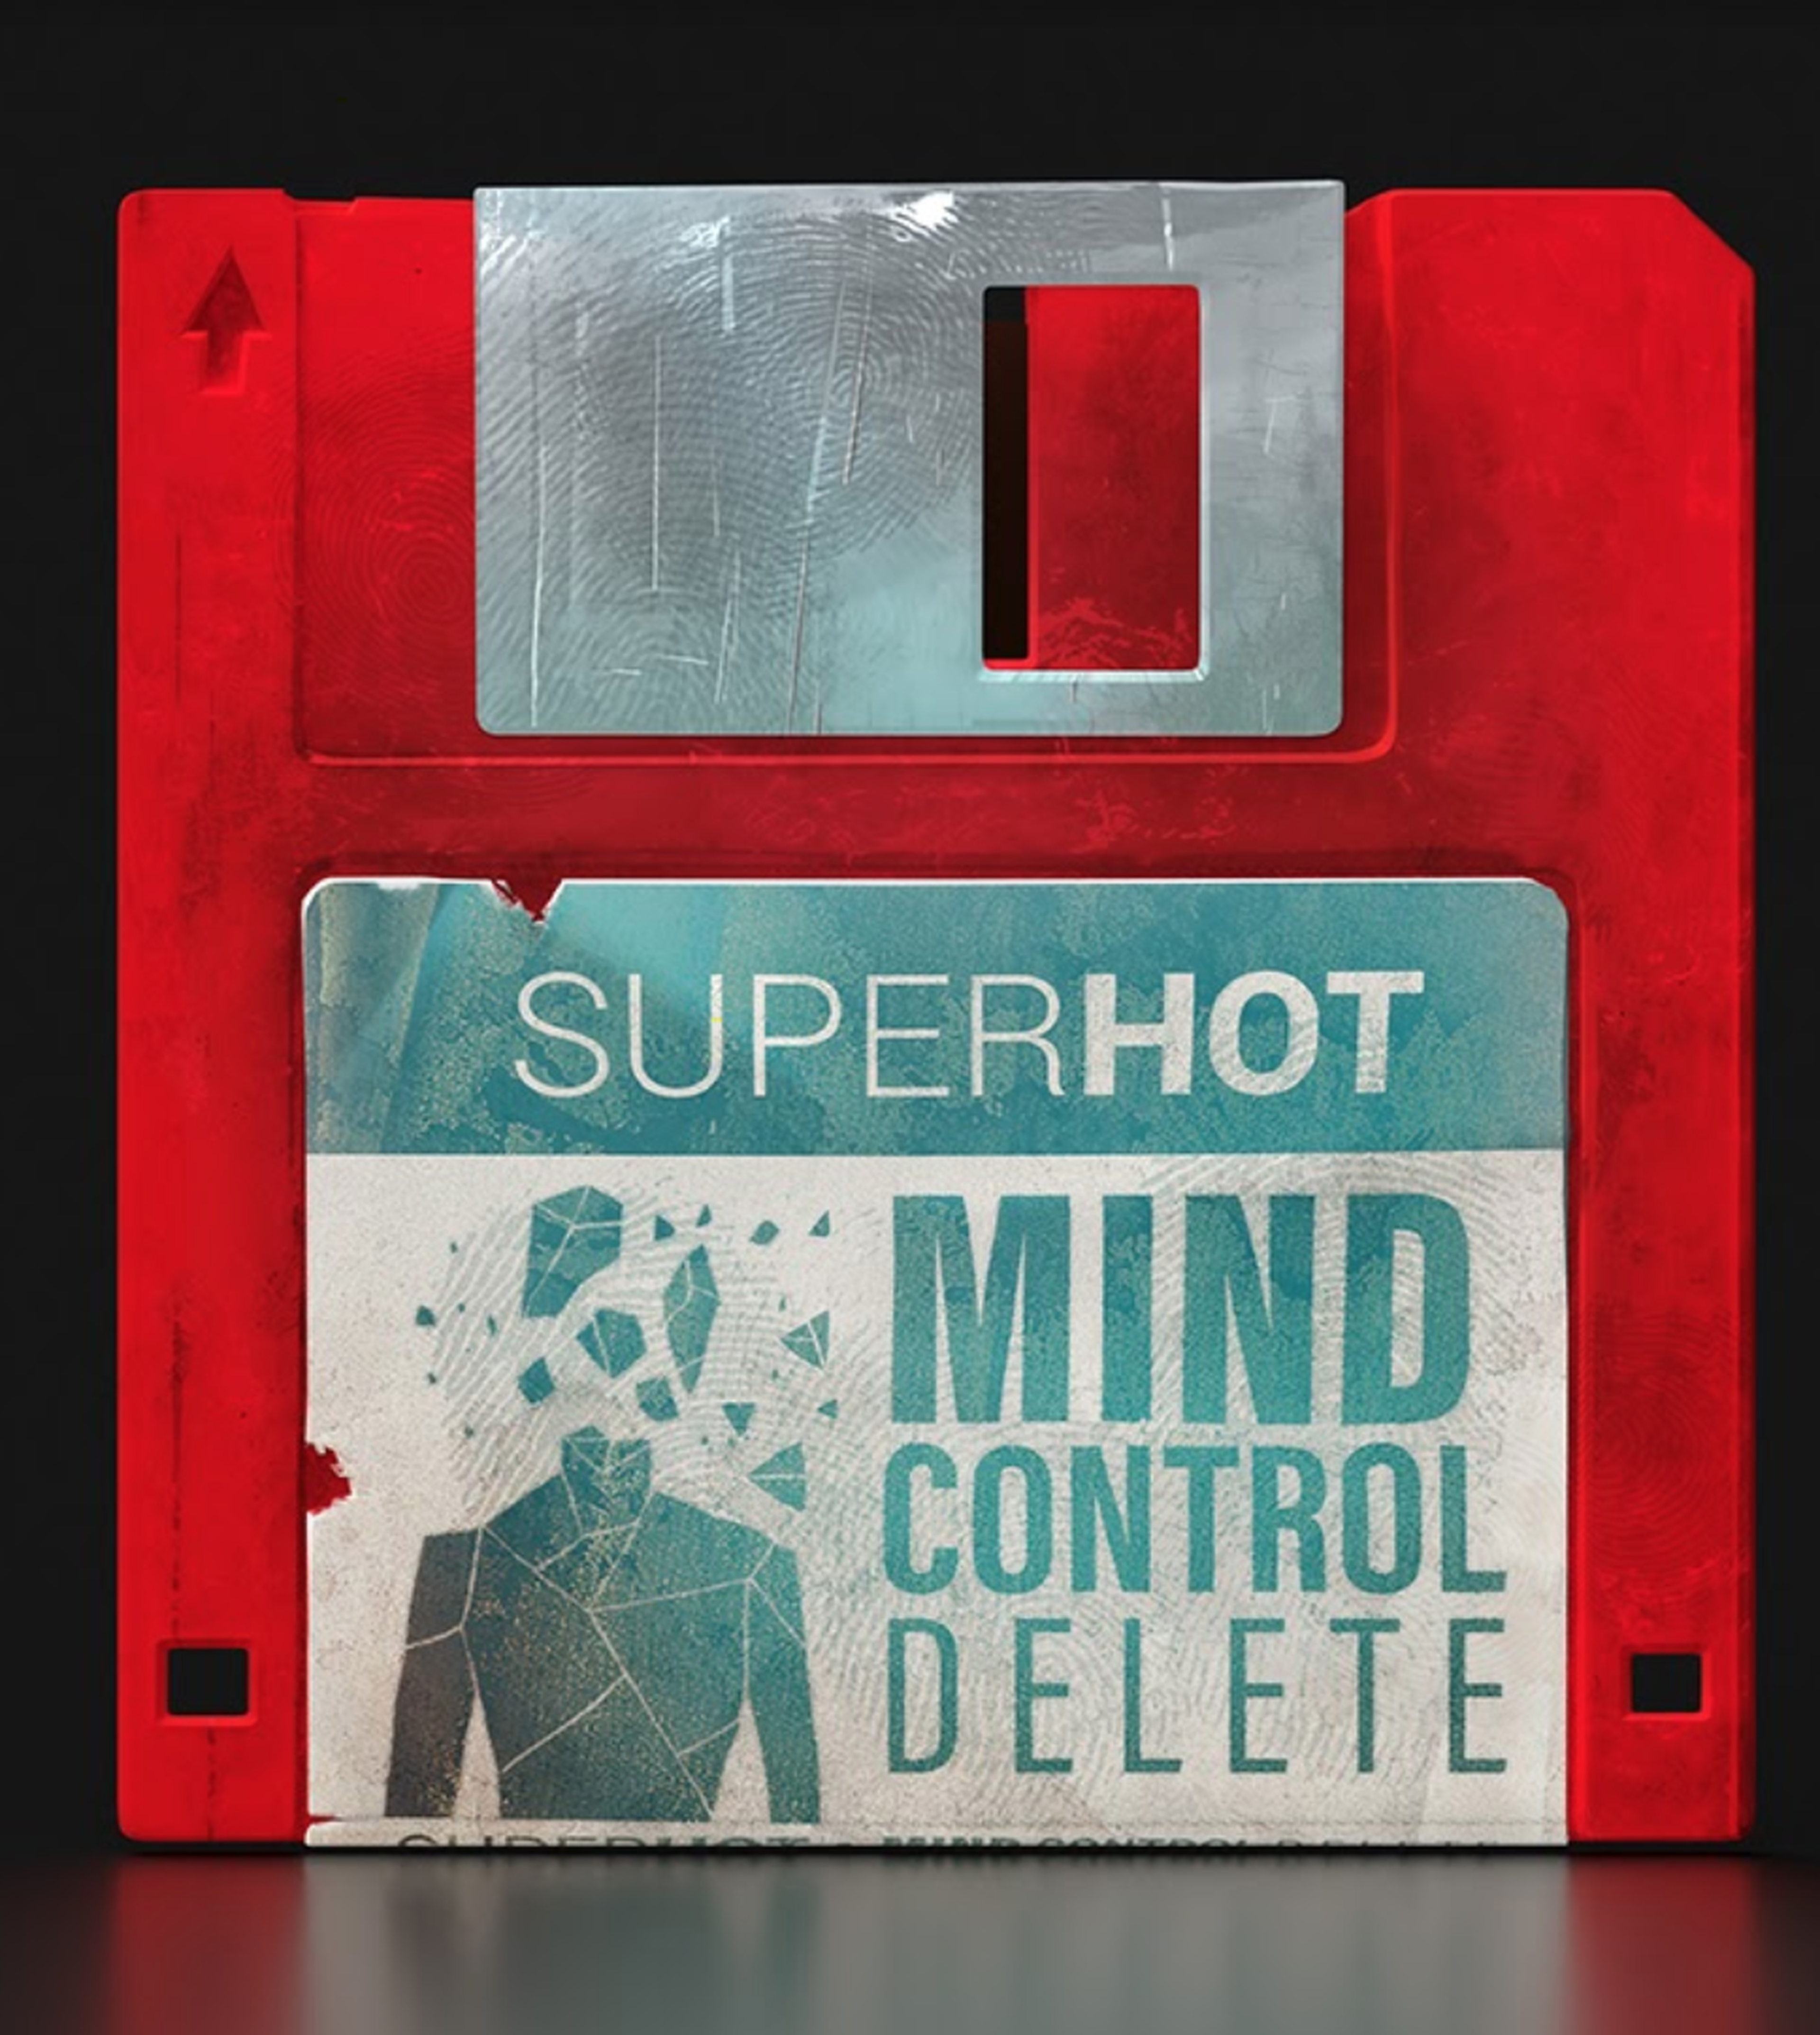 caratula super hot mind control delete